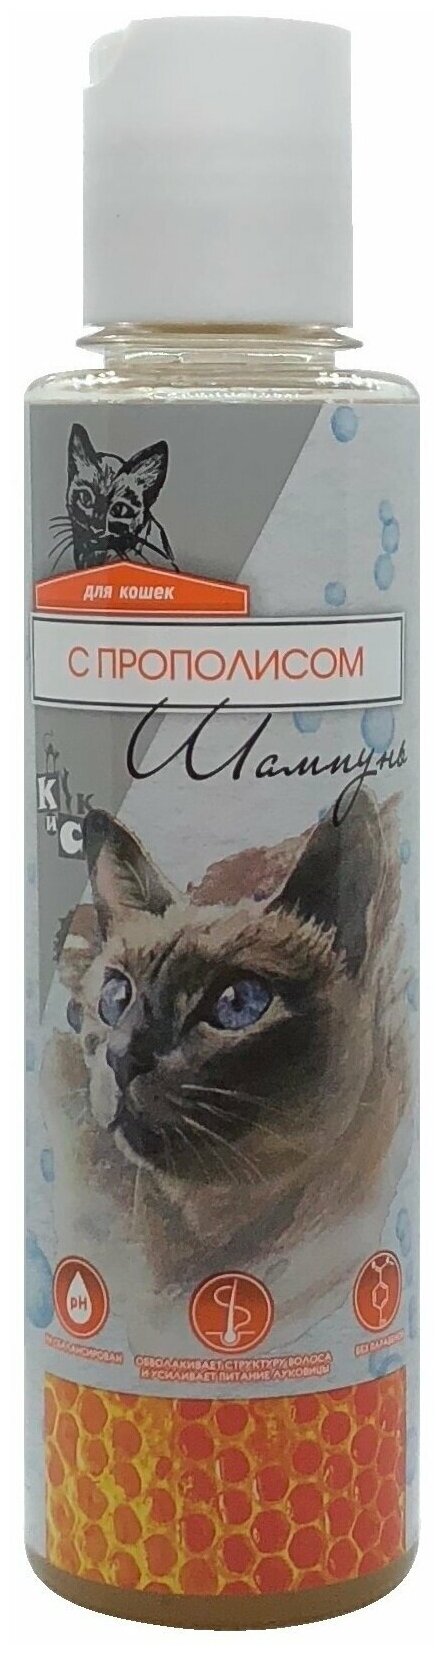 Зоошампунь с Прополисом для кошек 240мл. 2018